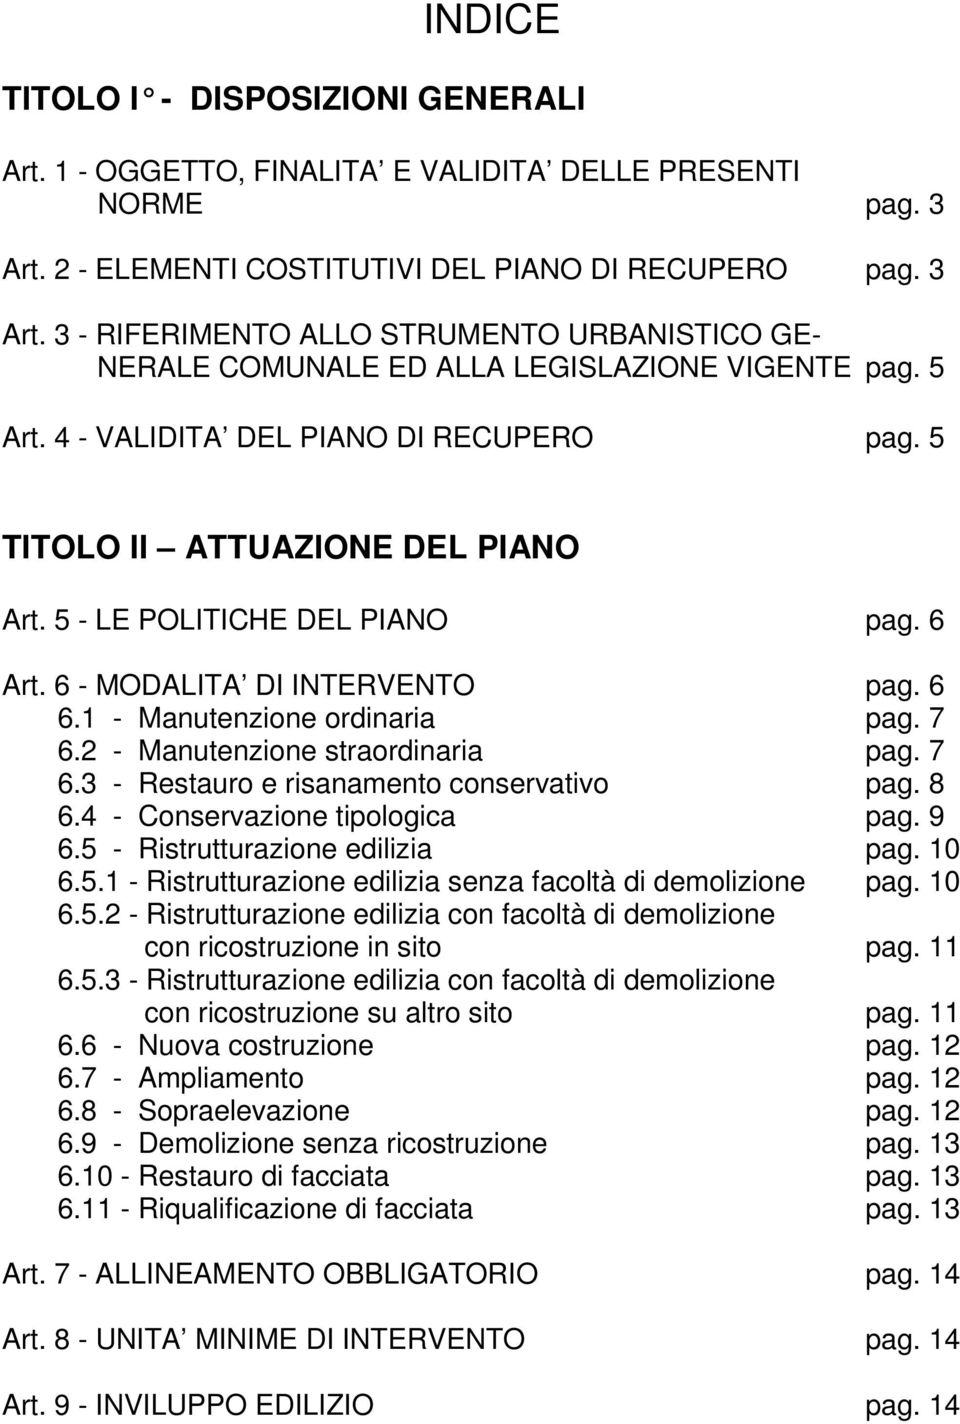 4 - VALIDITA DEL PIANO DI RECUPERO pag. 5 TITOLO II ATTUAZIONE DEL PIANO Art. 5 - LE POLITICHE DEL PIANO pag. 6 Art. 6 - MODALITA DI INTERVENTO pag. 6 6.1 - Manutenzione ordinaria pag. 7 6.